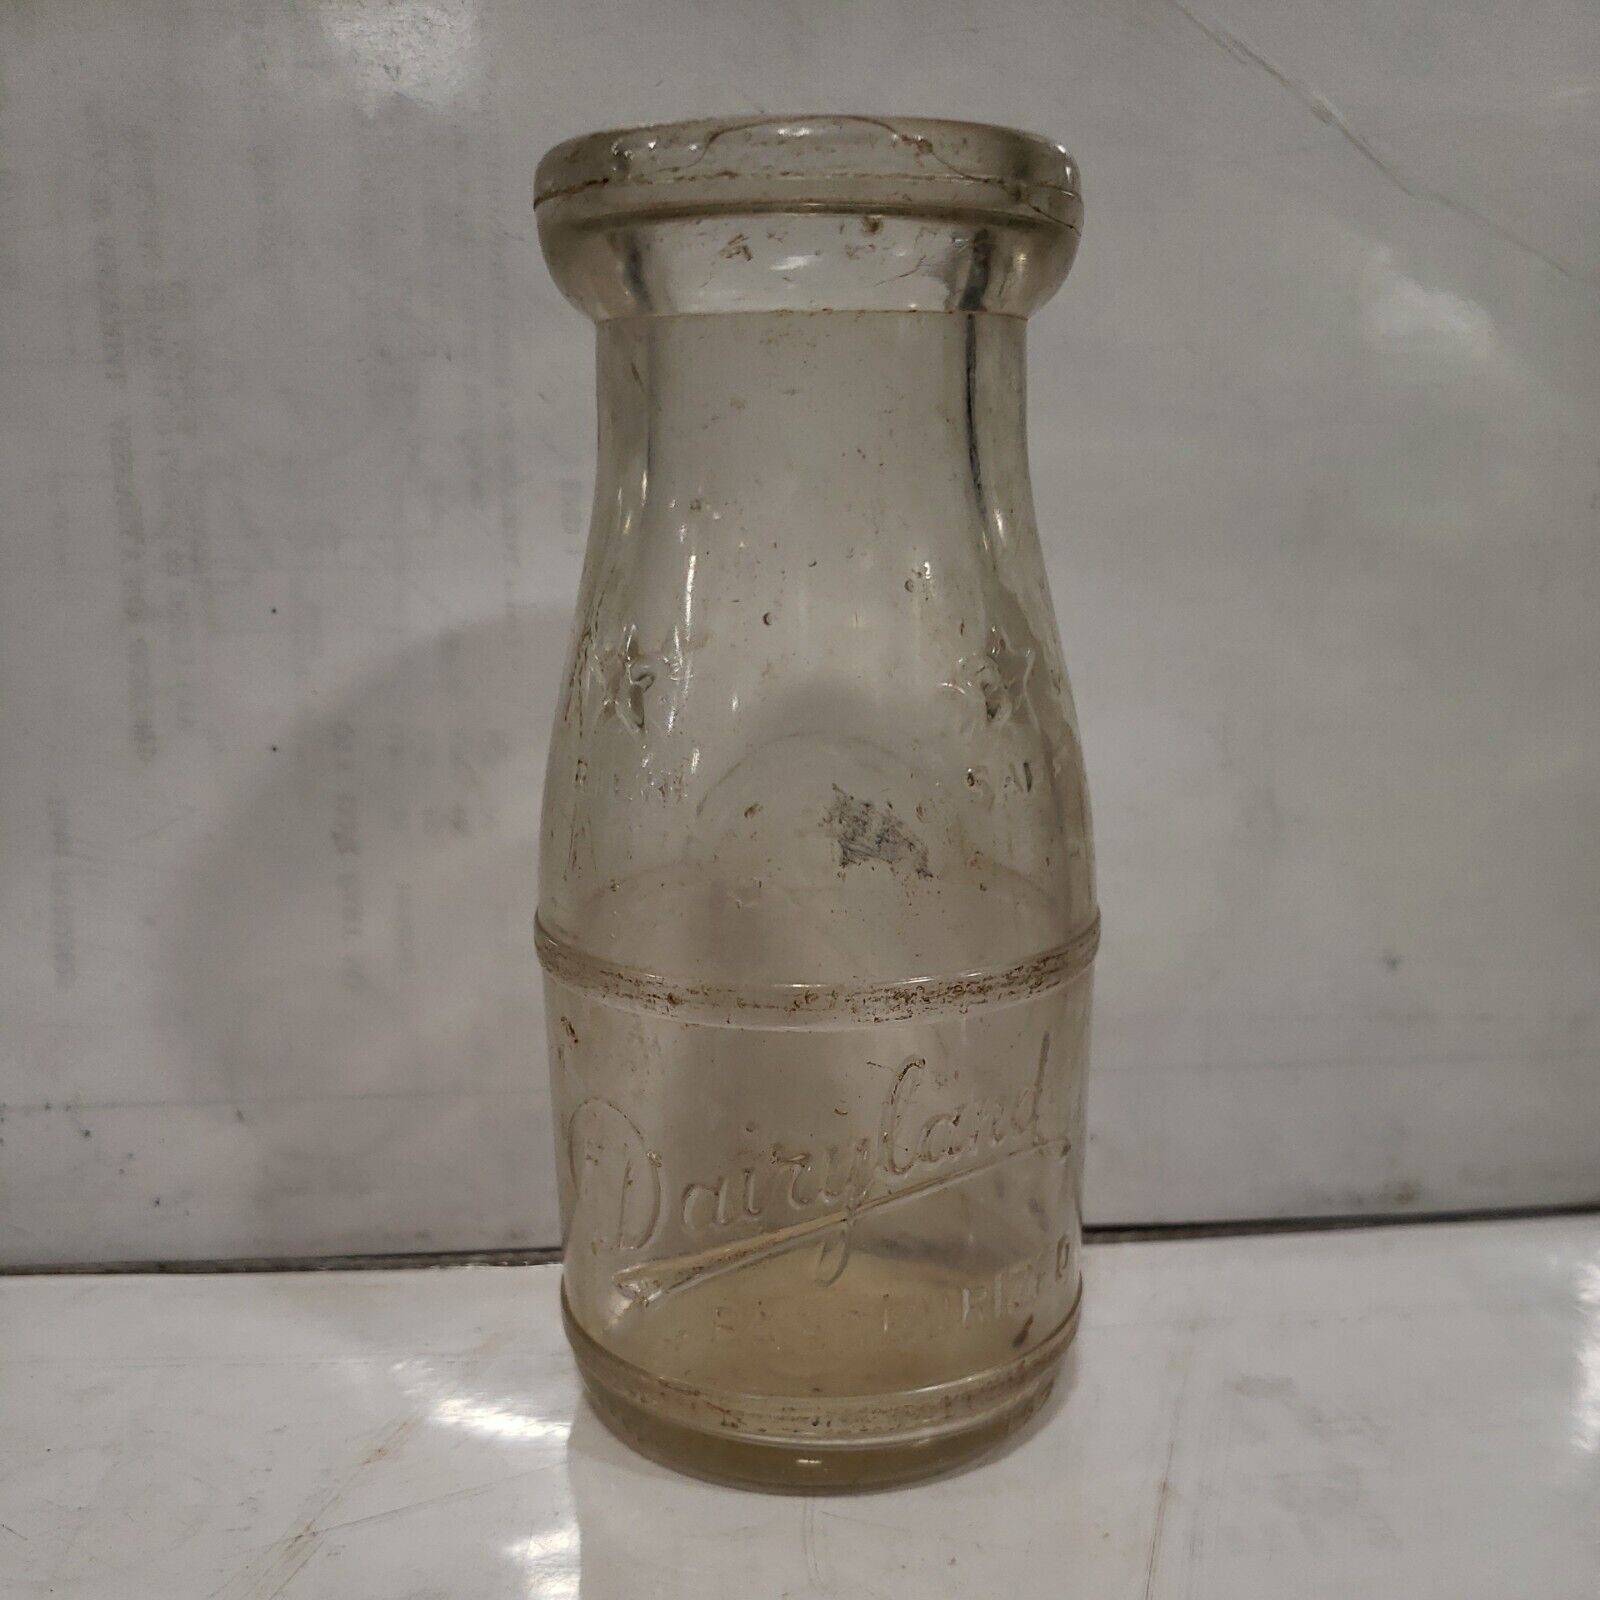 Vintage Half Pint Milk Bottle,Dairyland